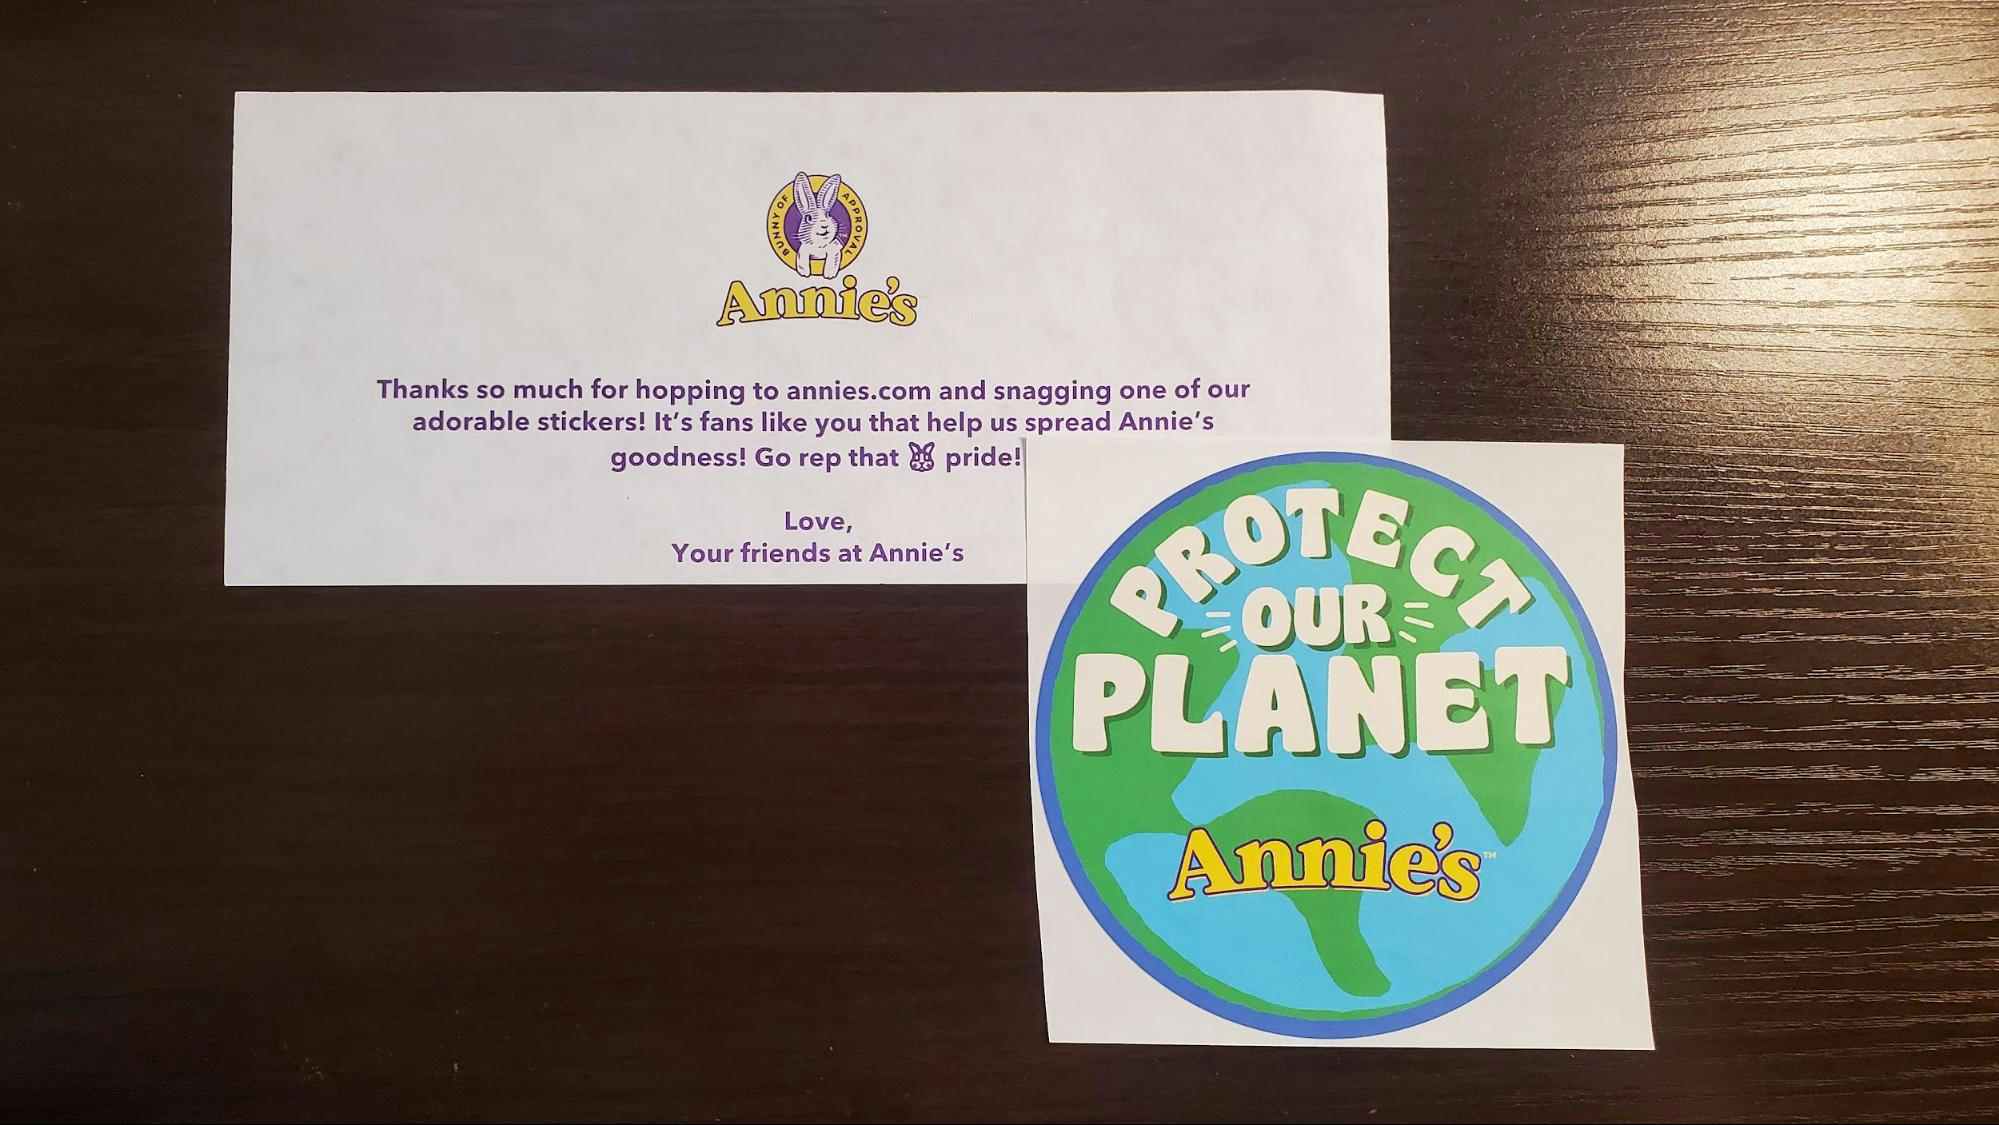 Free Annie's sticker by mail